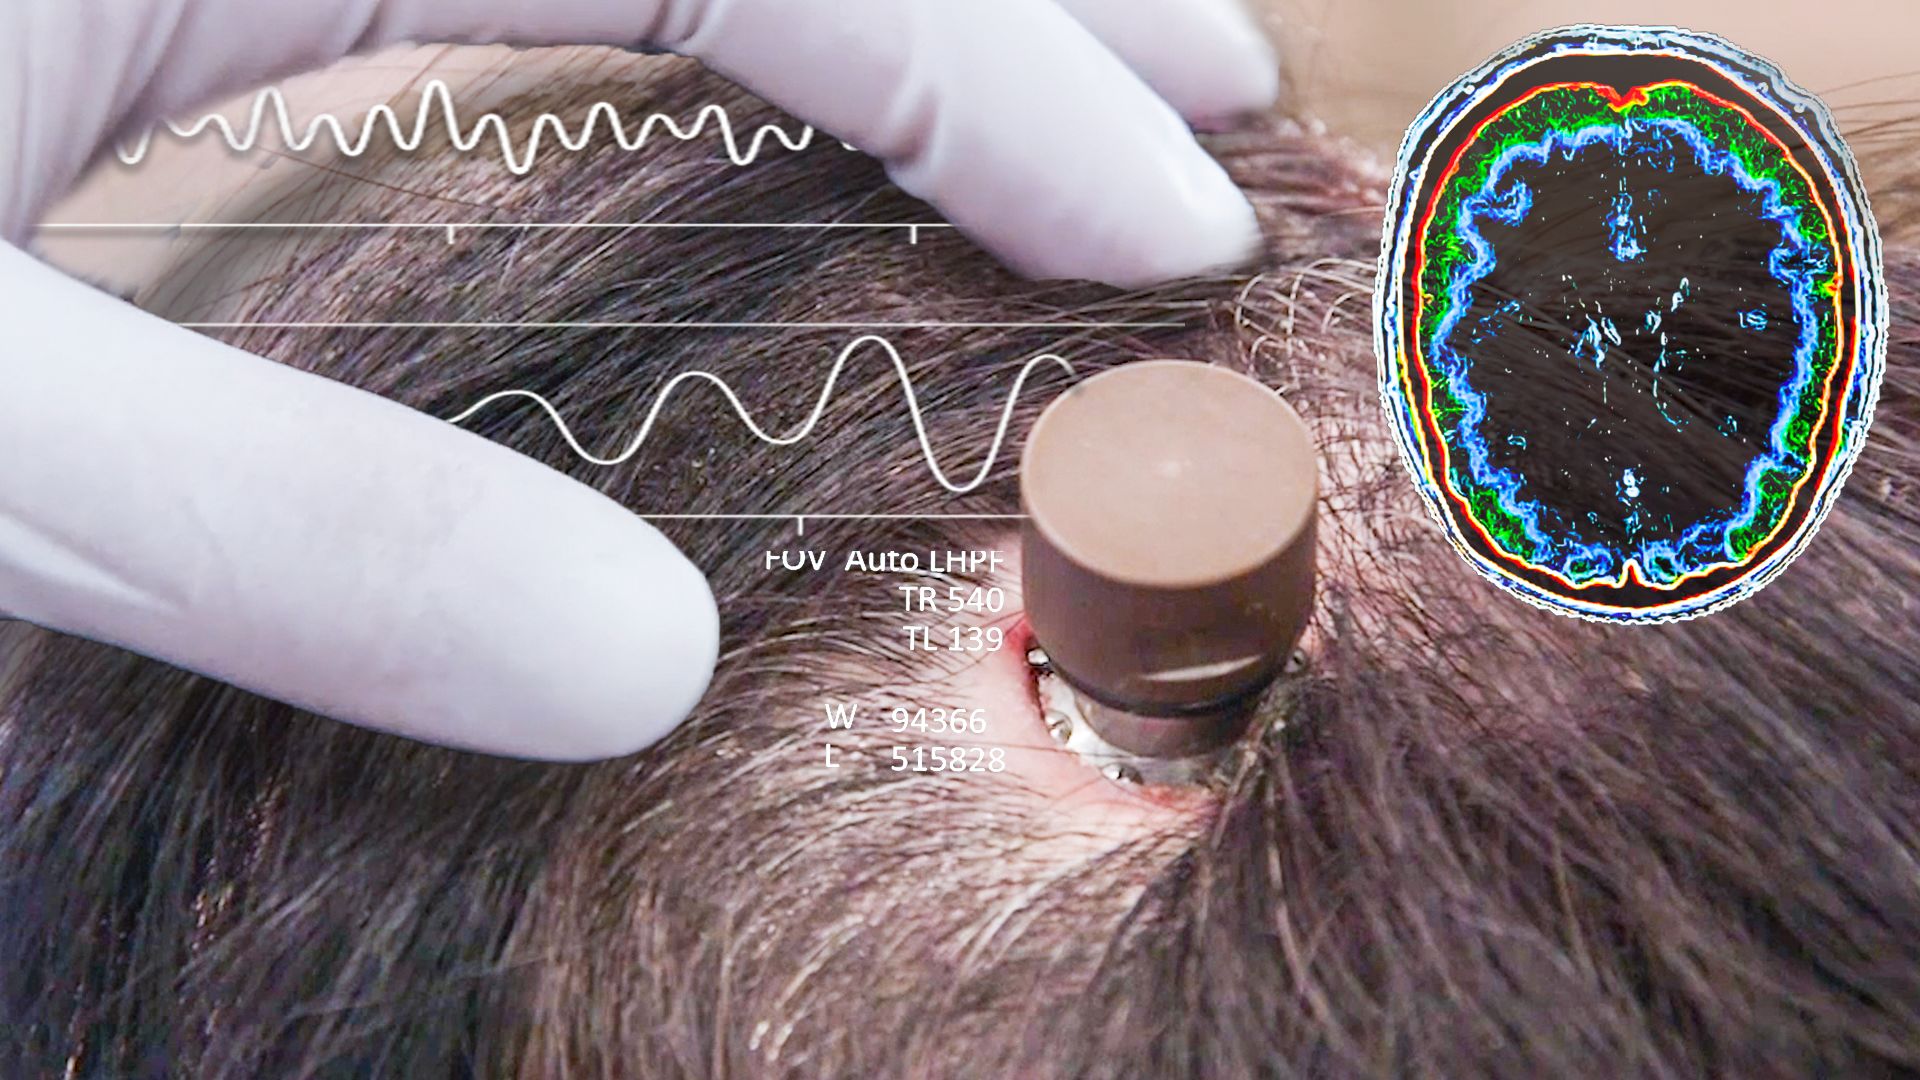 آزمایش ایمپلنت مغز بر روی انسان توسط نورالینک  + فیلم ویدیو
